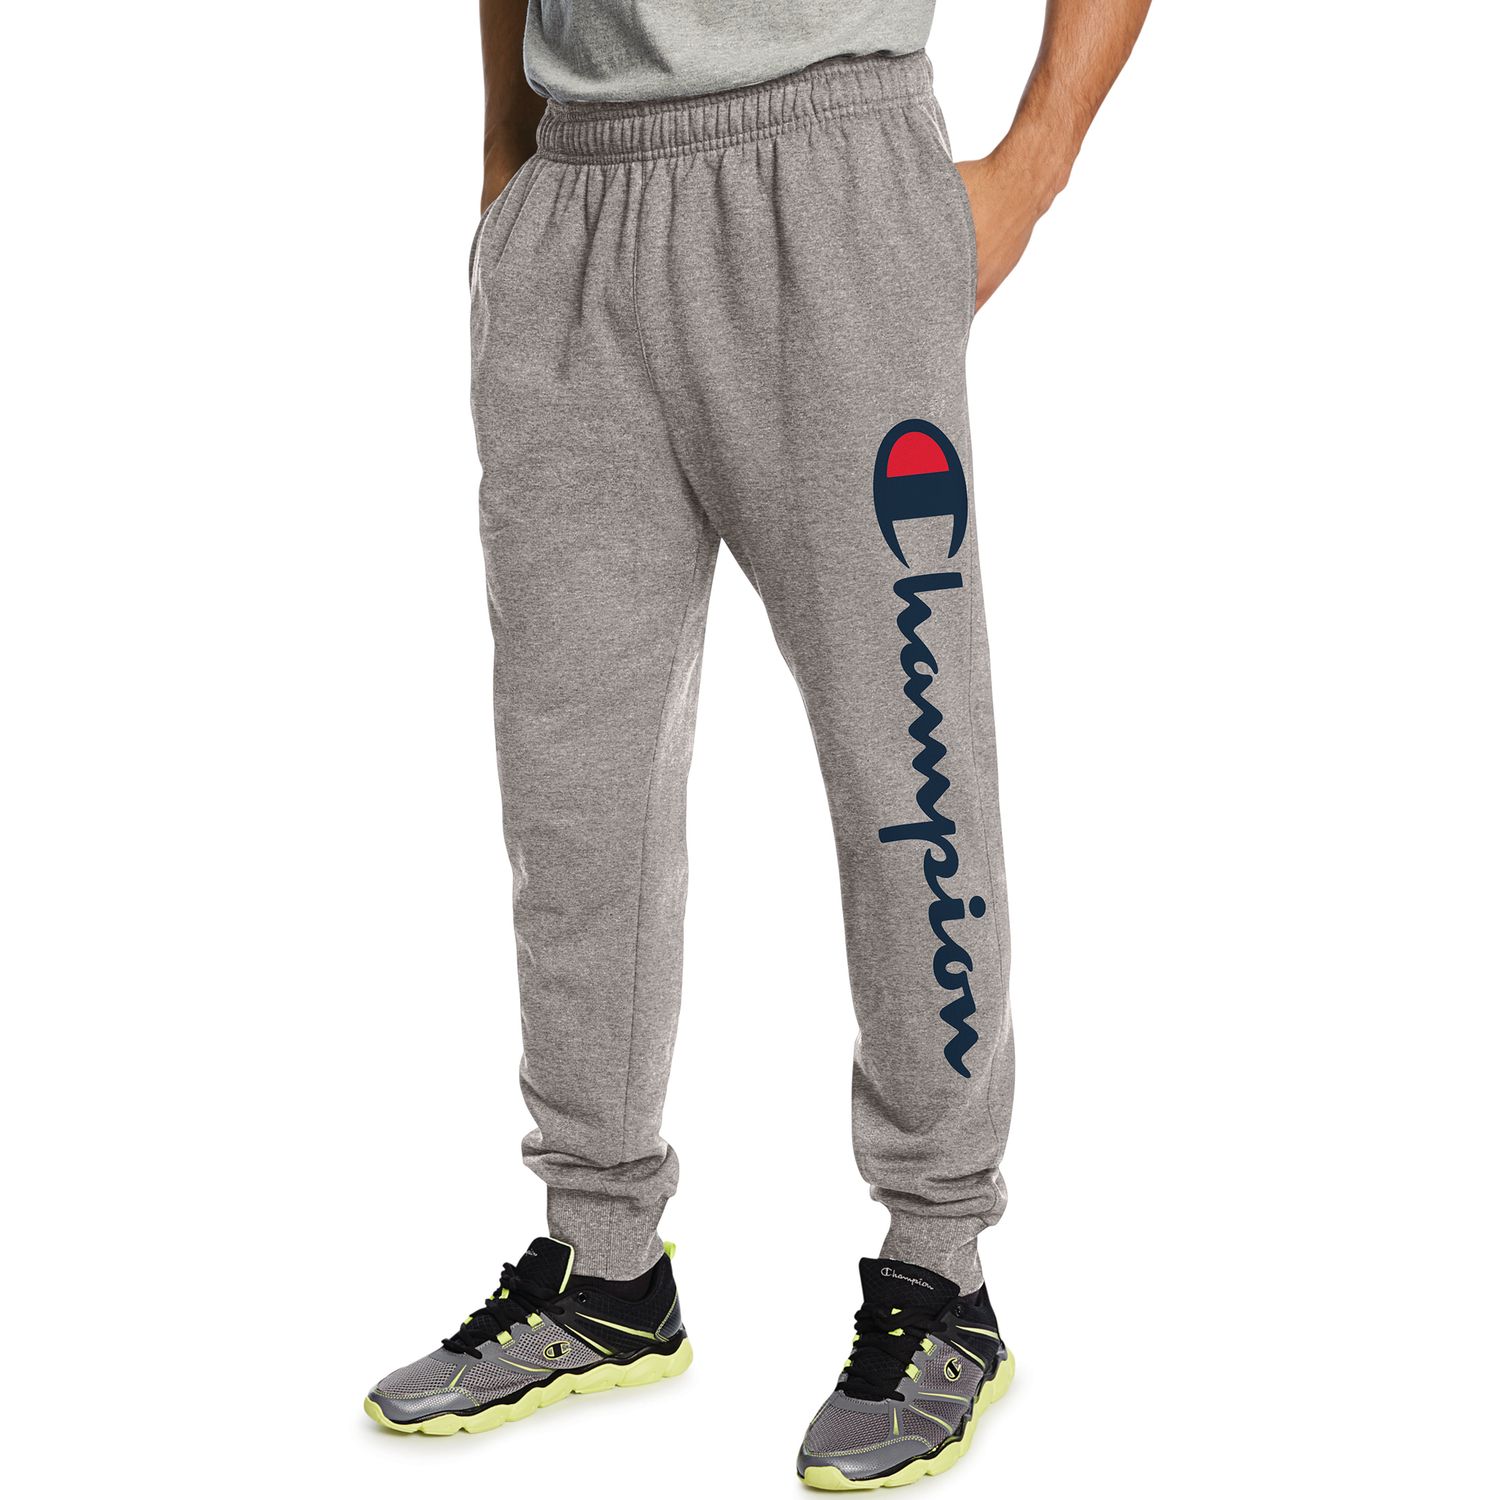 men's champion jogging pants